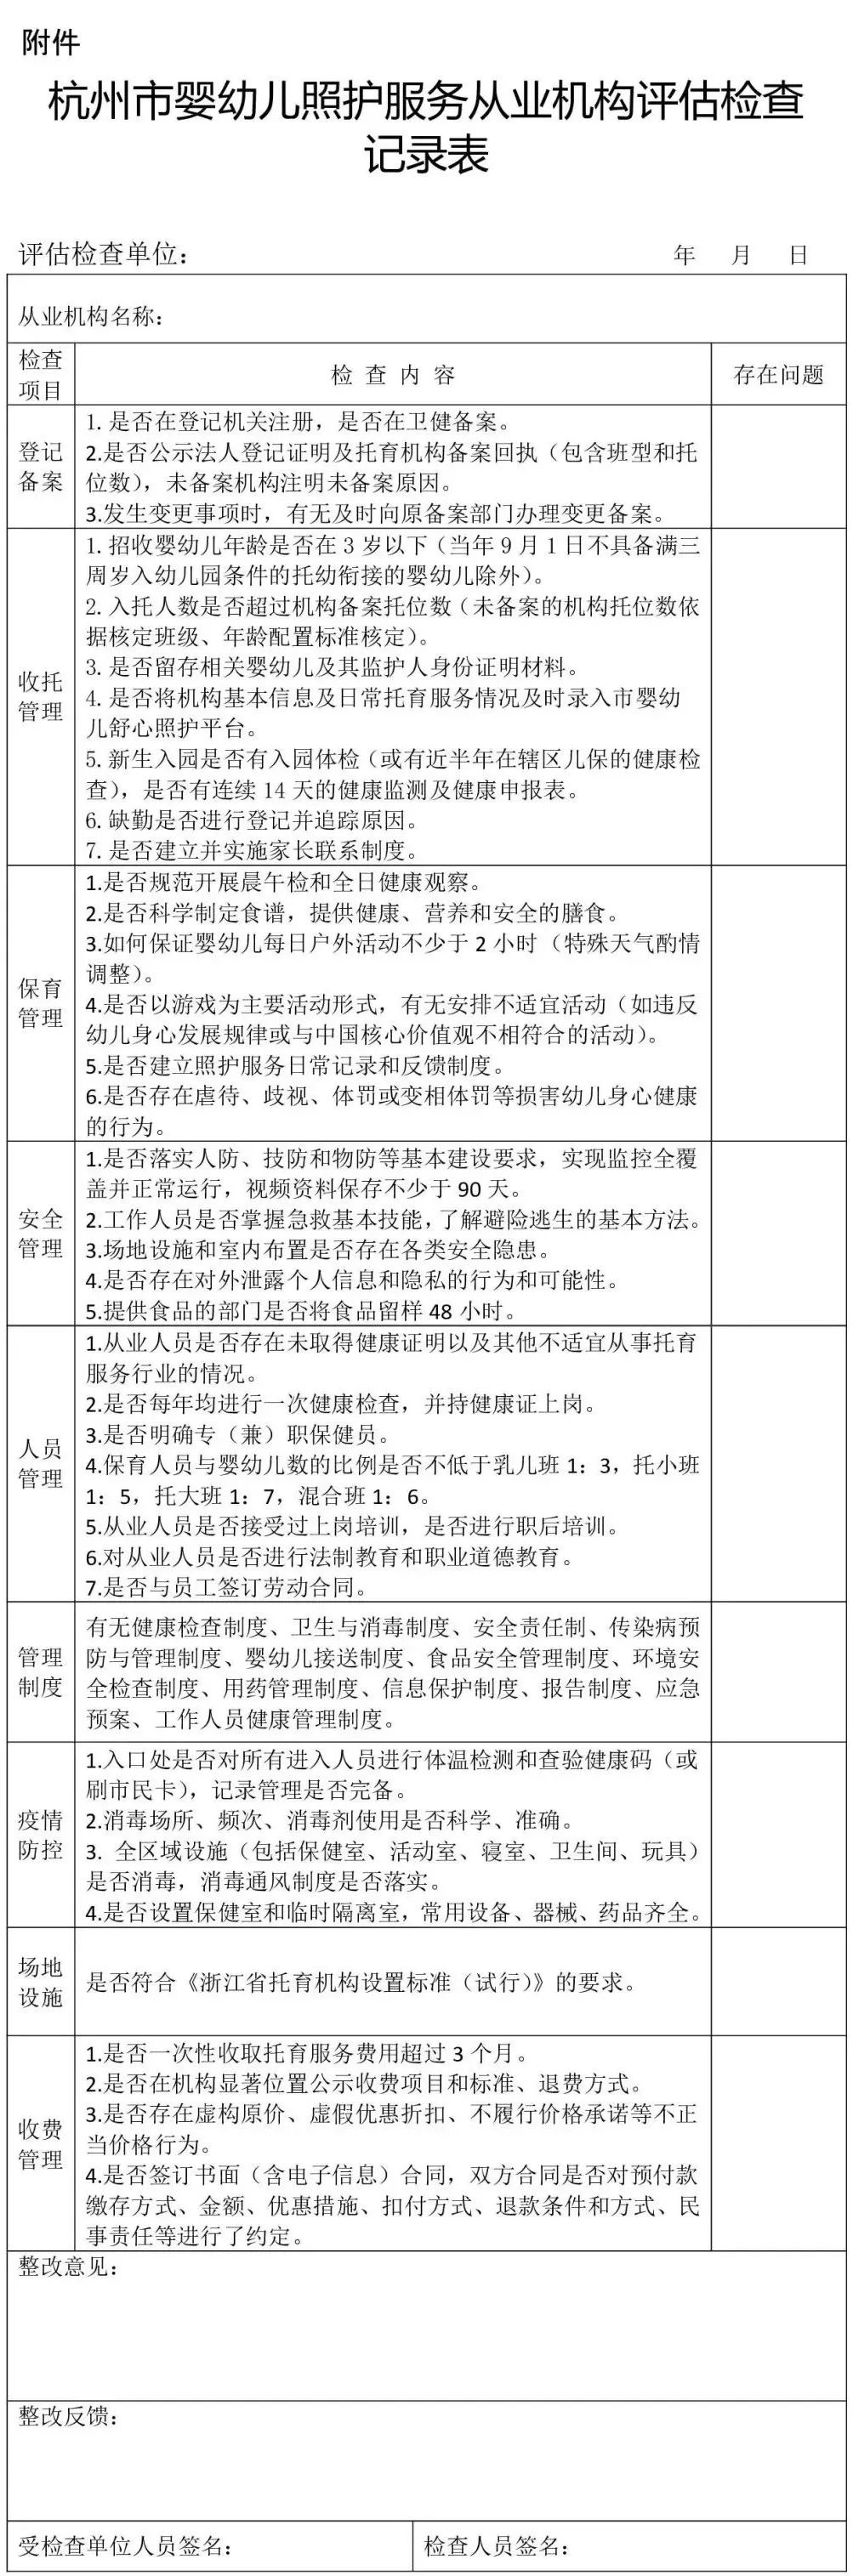 每年1次对托育从业机构检查！杭州市发布《婴幼儿照护服务指导机构工作规范（试行）》